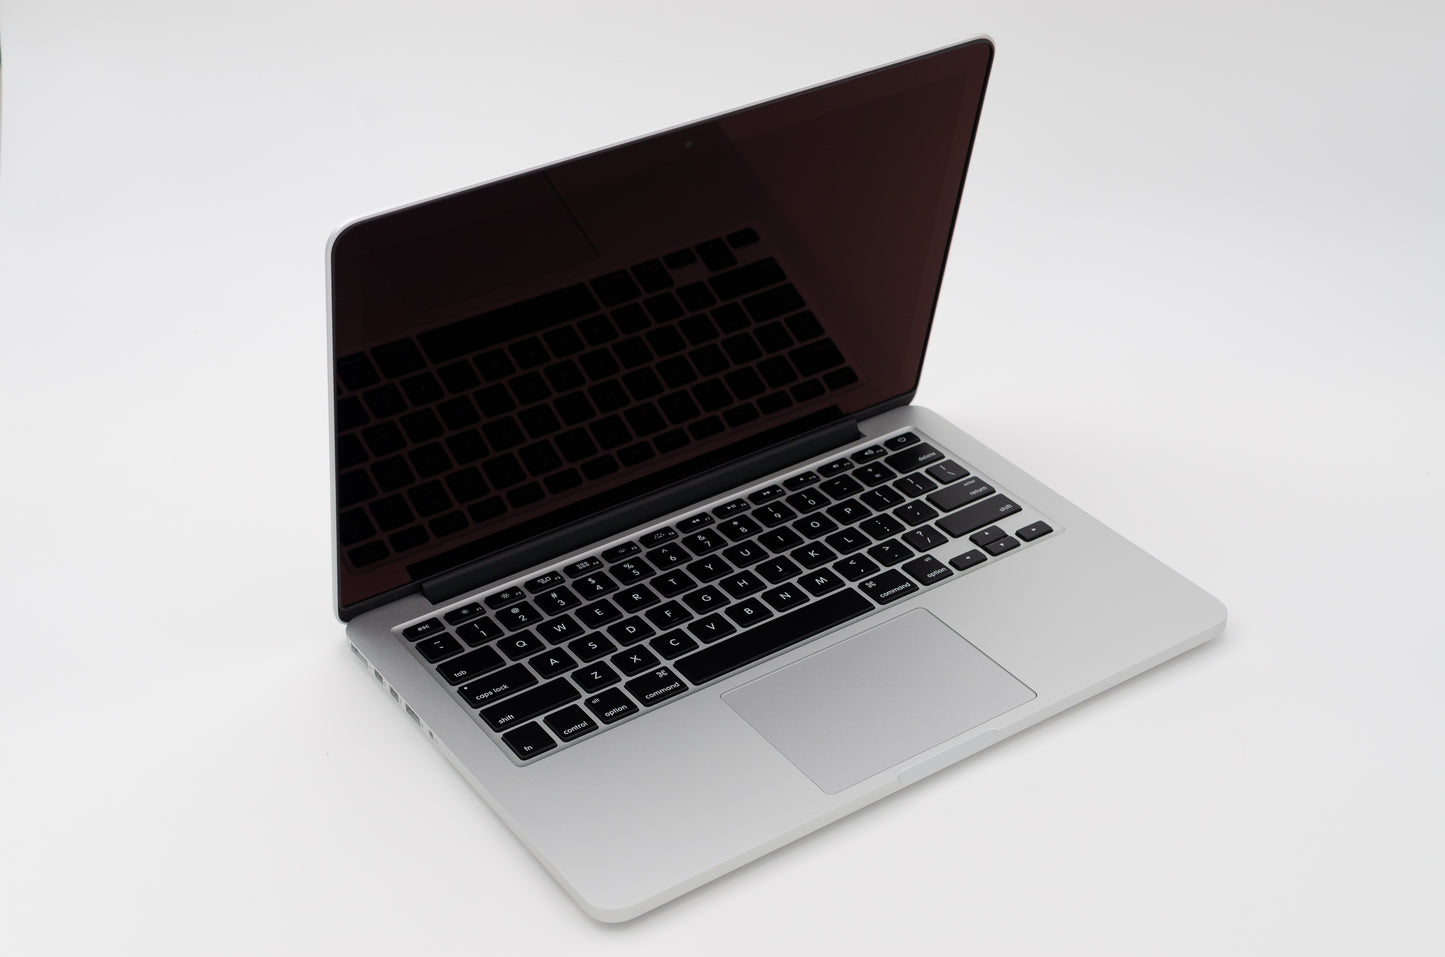 apple-mid-2014-13.3-inch-macbook-pro-retina-a1502-aluminum-dci5 - 2.6ghz processor, 8gb ram, 5100 - 1.5gb gpu-mgx82ll/a-4